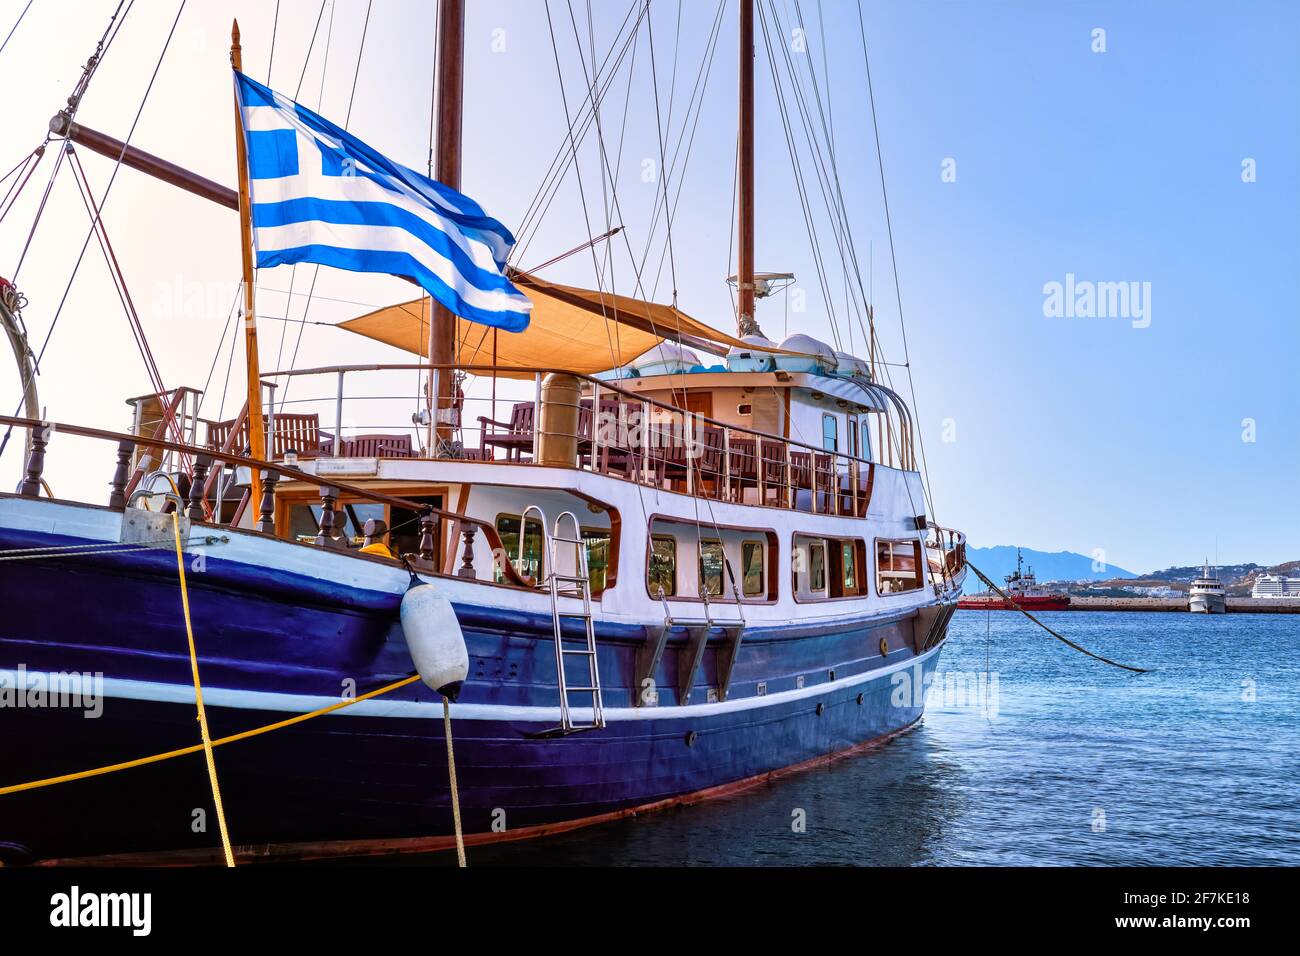 Segelboot unter griechischer Flagge, der an der Anlegestelle der typisch griechischen Insel festgemacht ist. Schoner. Sommertag Sonne, Urlaub und Abenteuer. Mykonos, Griechenland. Stockfoto